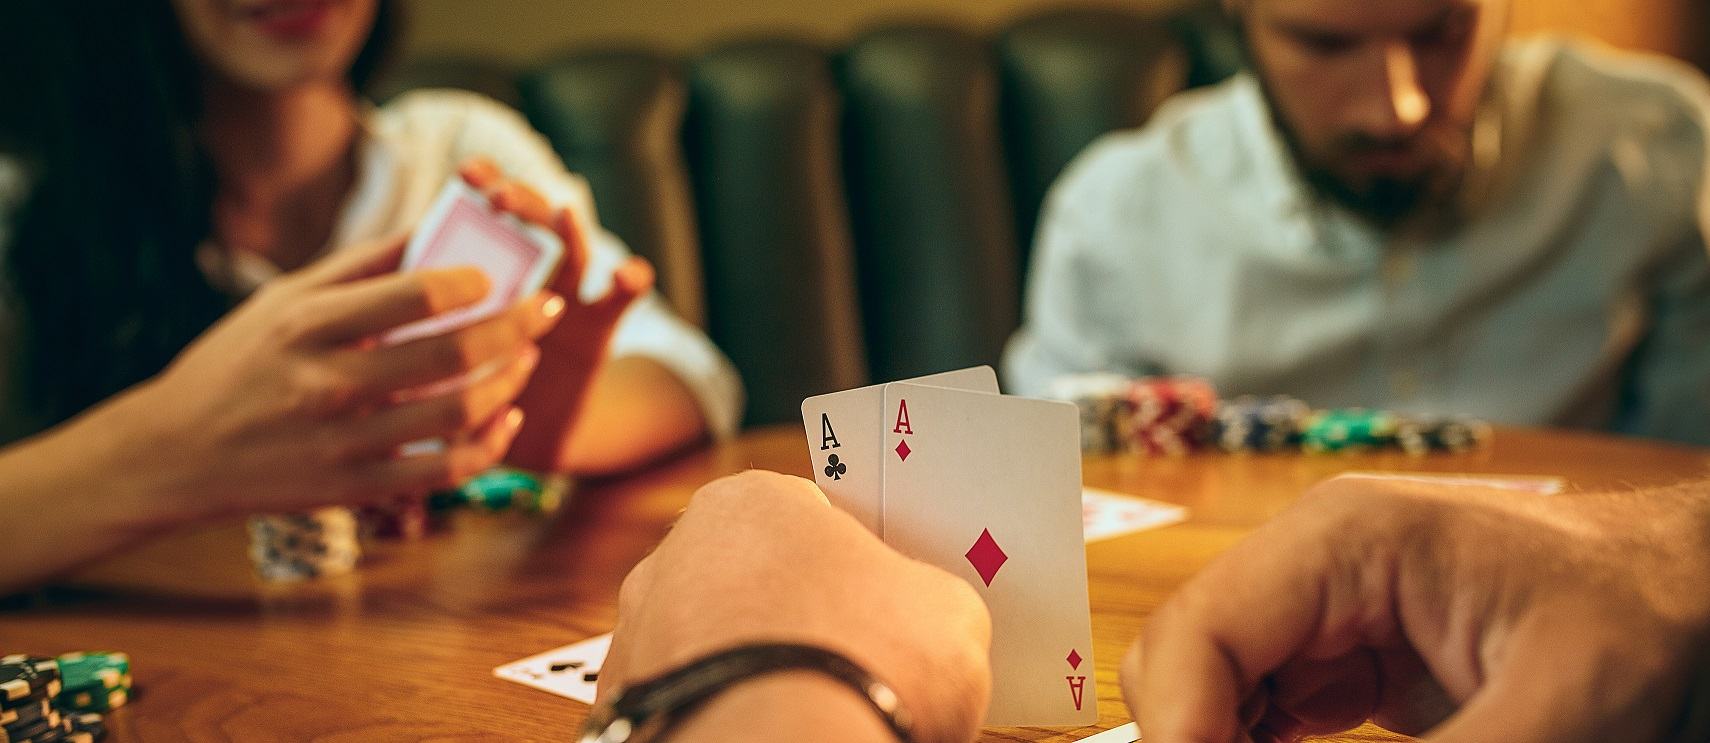 Chơi poker – cách để không thua cháy túi